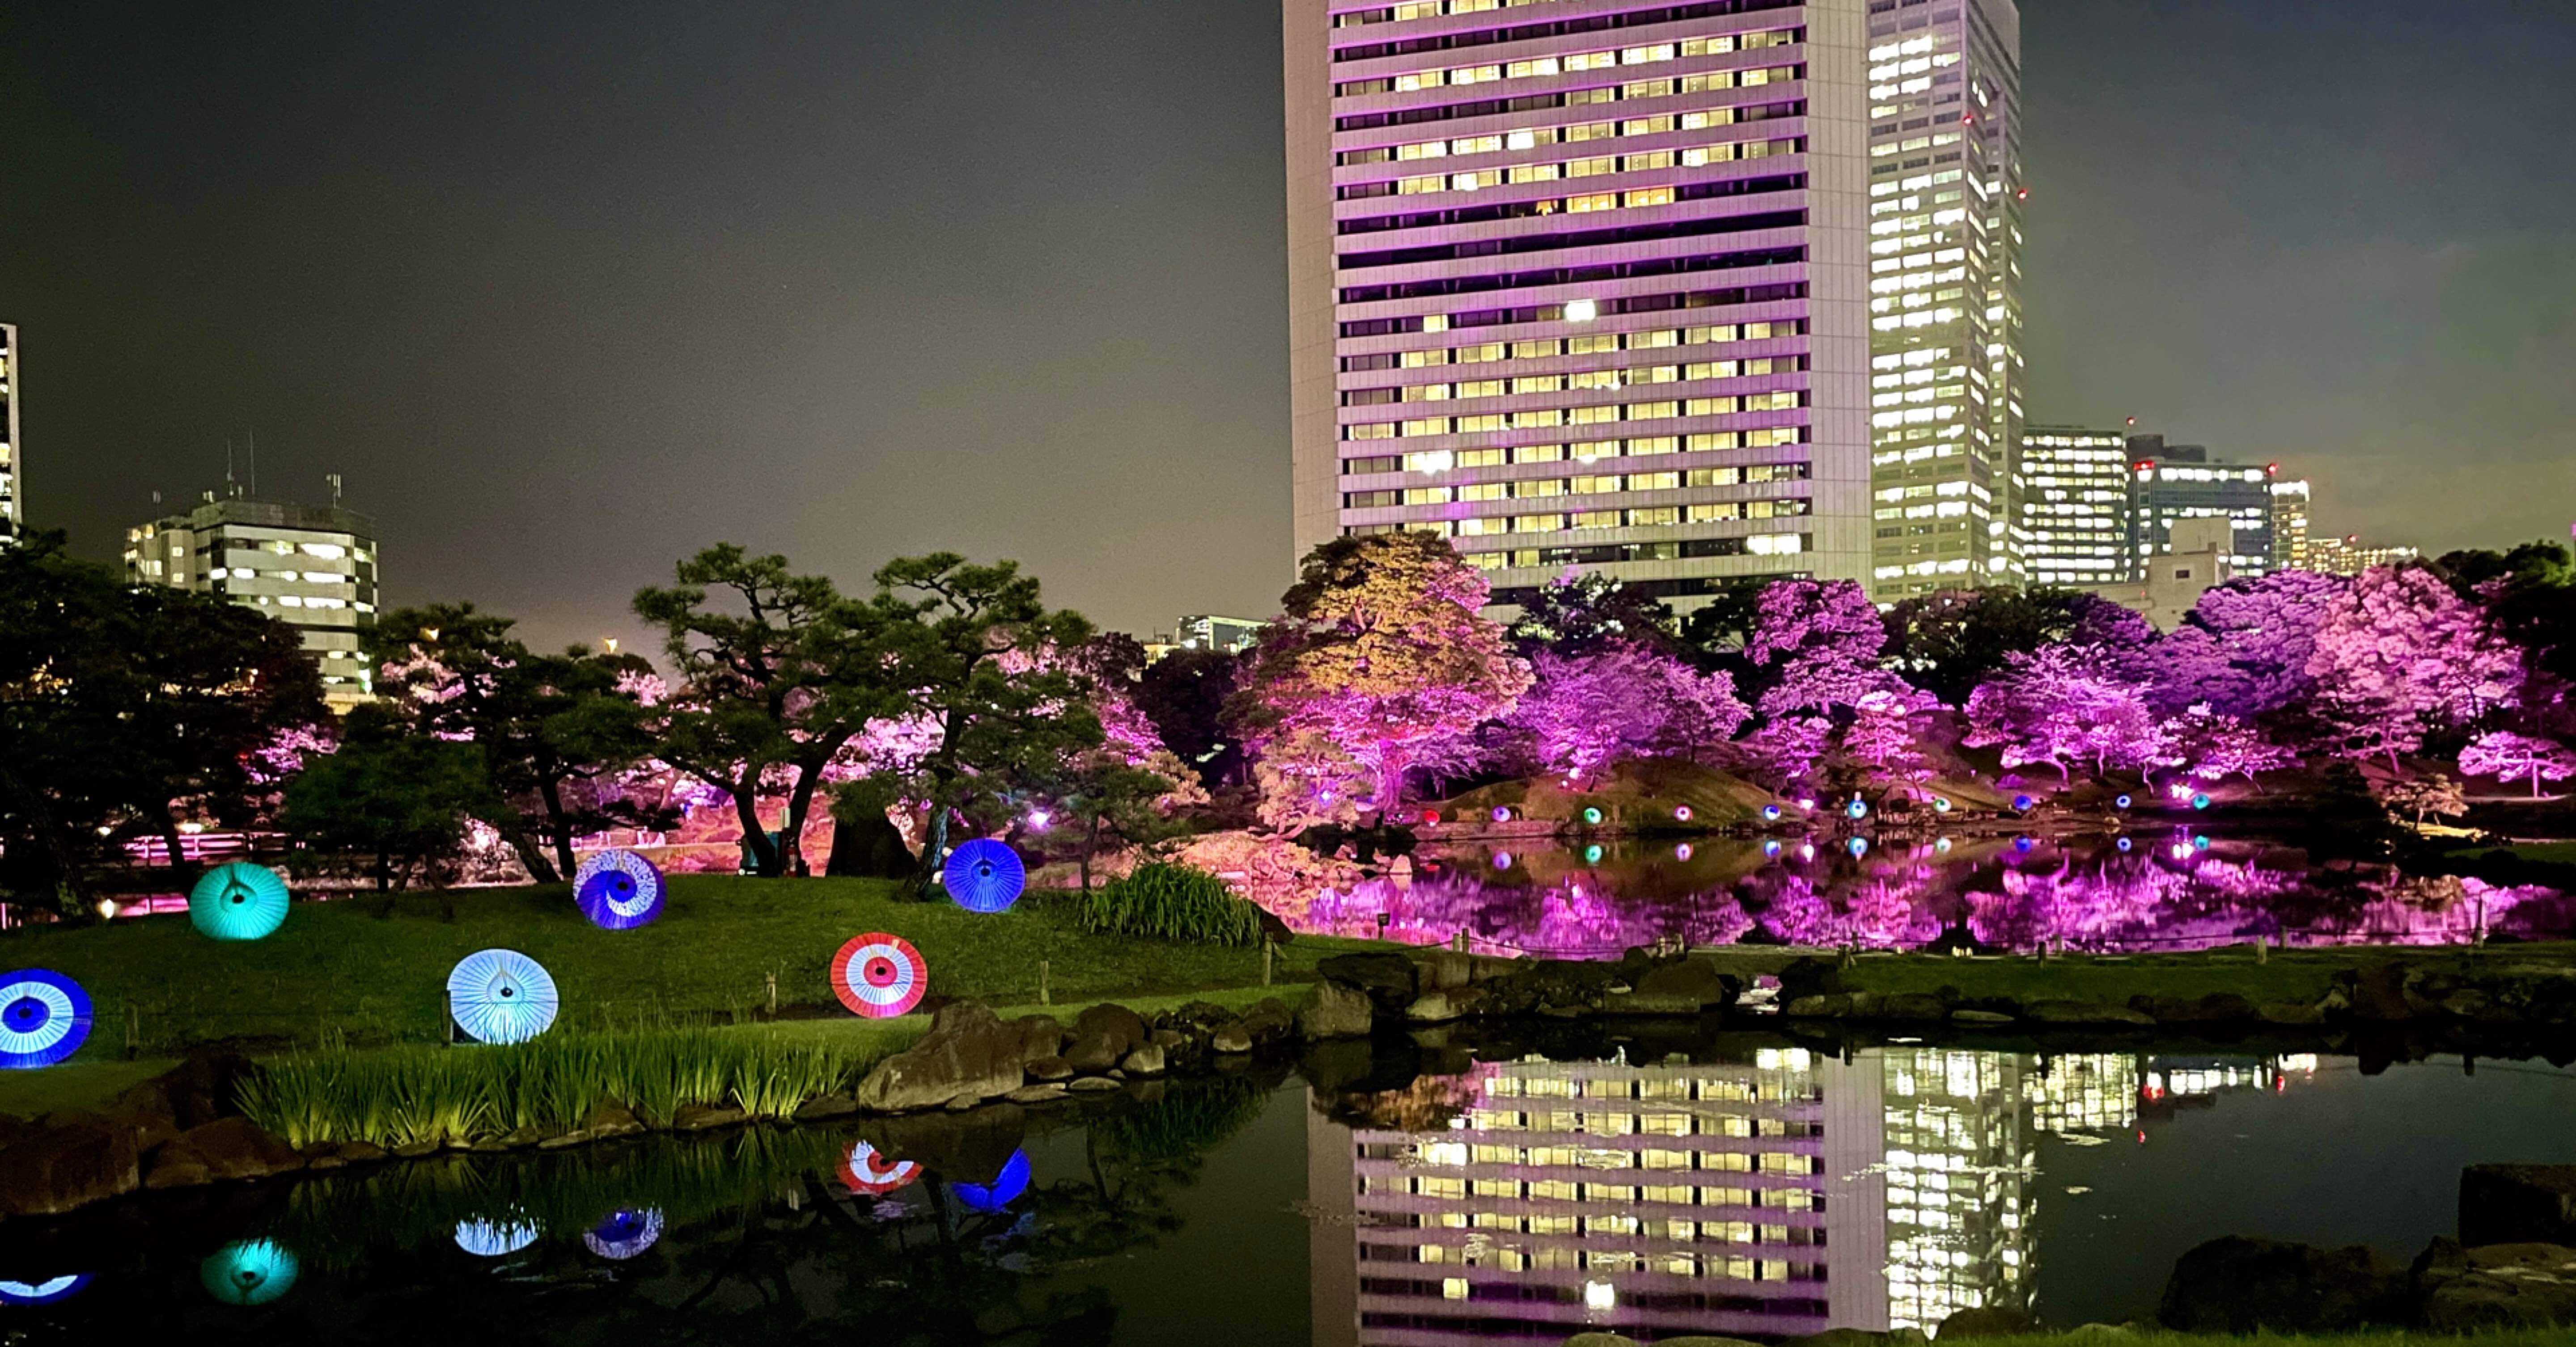 東京の休日 125 旧芝離宮夜会 初夏の桜は雅でした Mana まな 旅と日々 Note